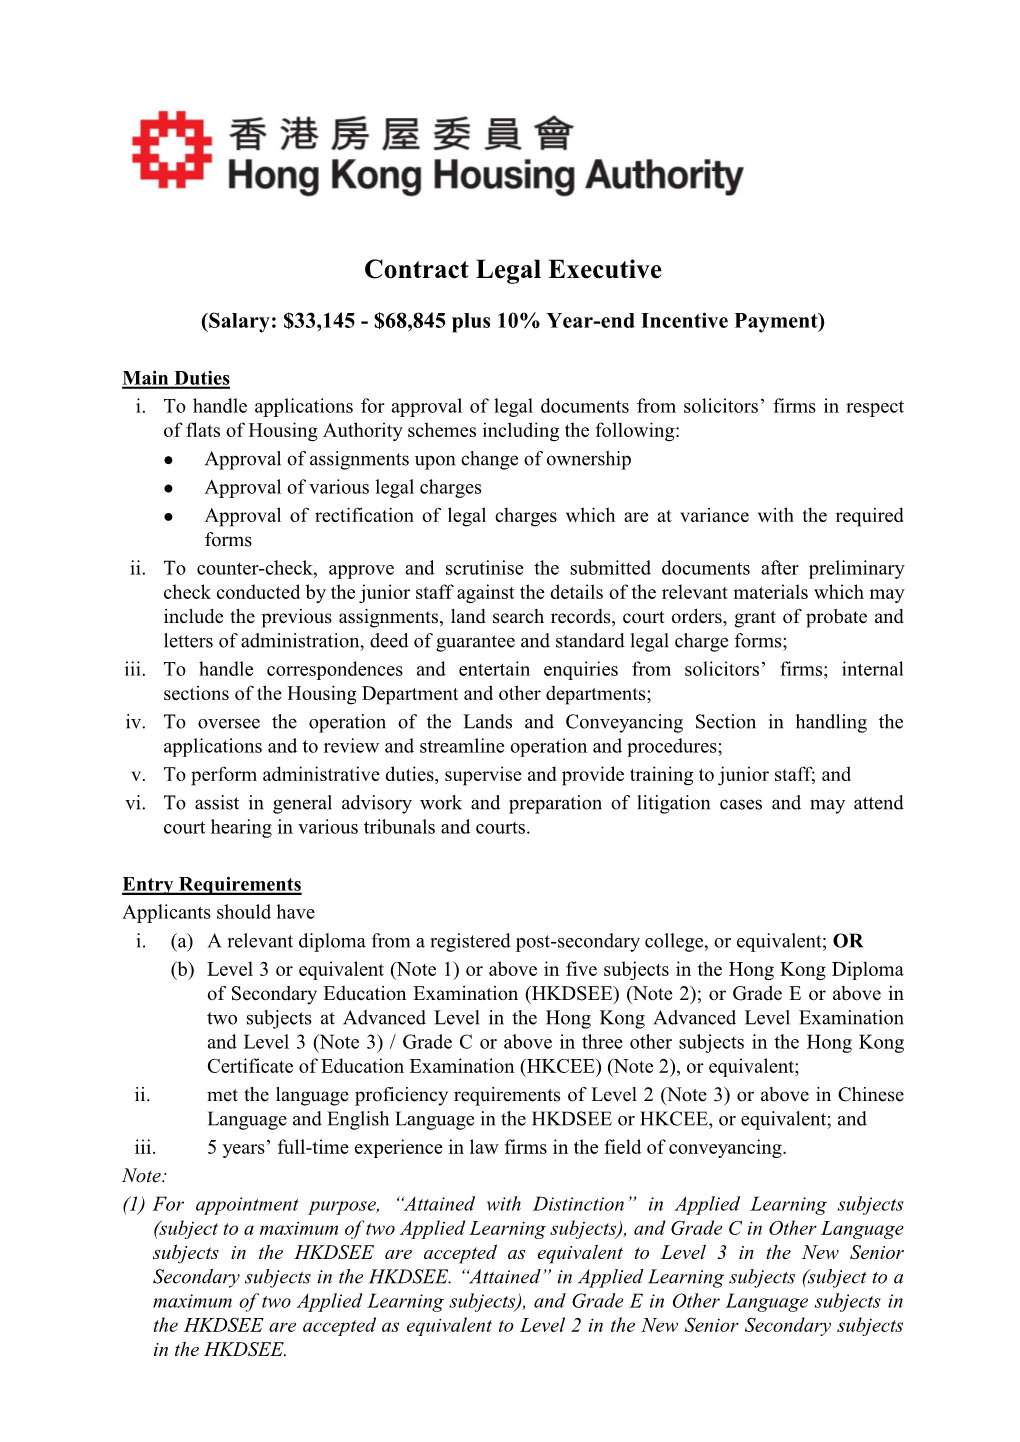 Contract Legal Executive